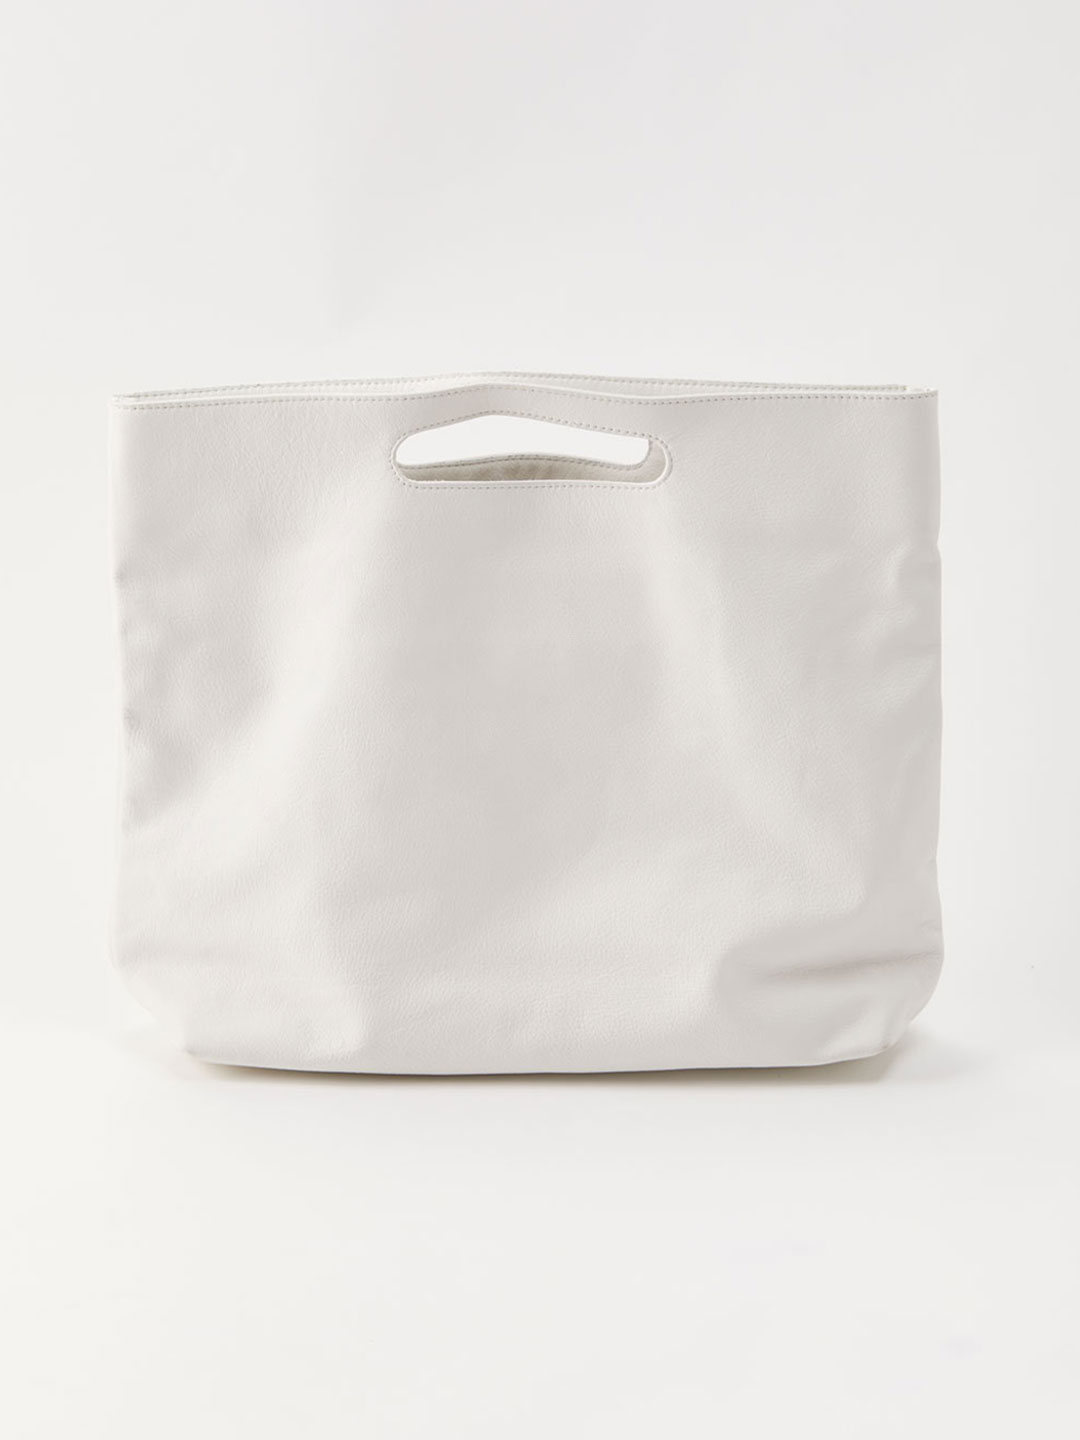 Slouch Foldover Bag - White